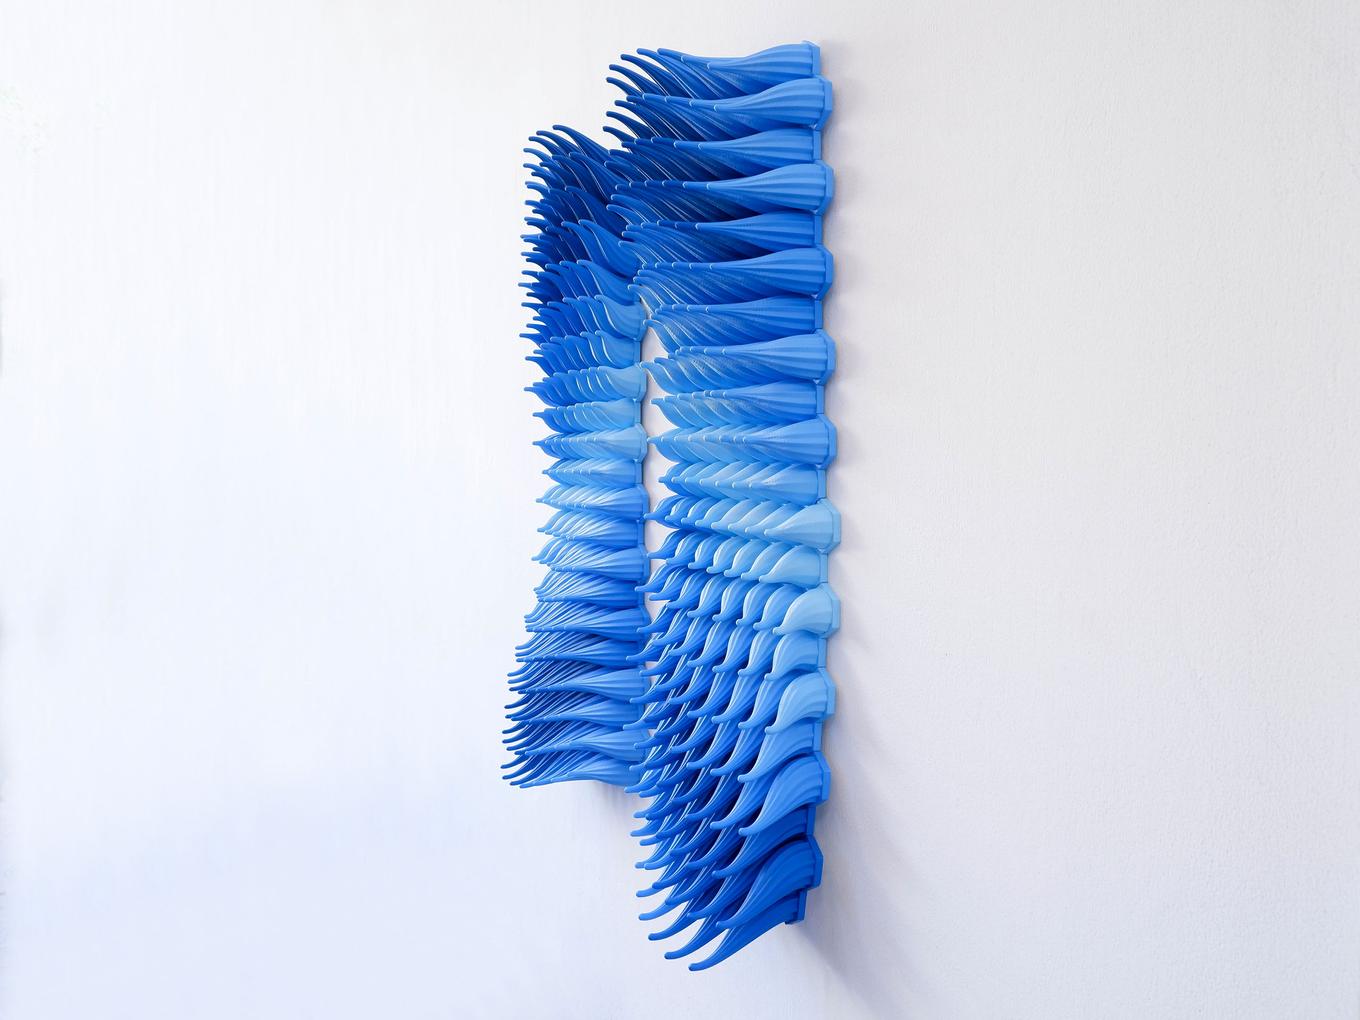 Diverging Storm | Herschel Shapiro | Contemporary Wall Sculpture